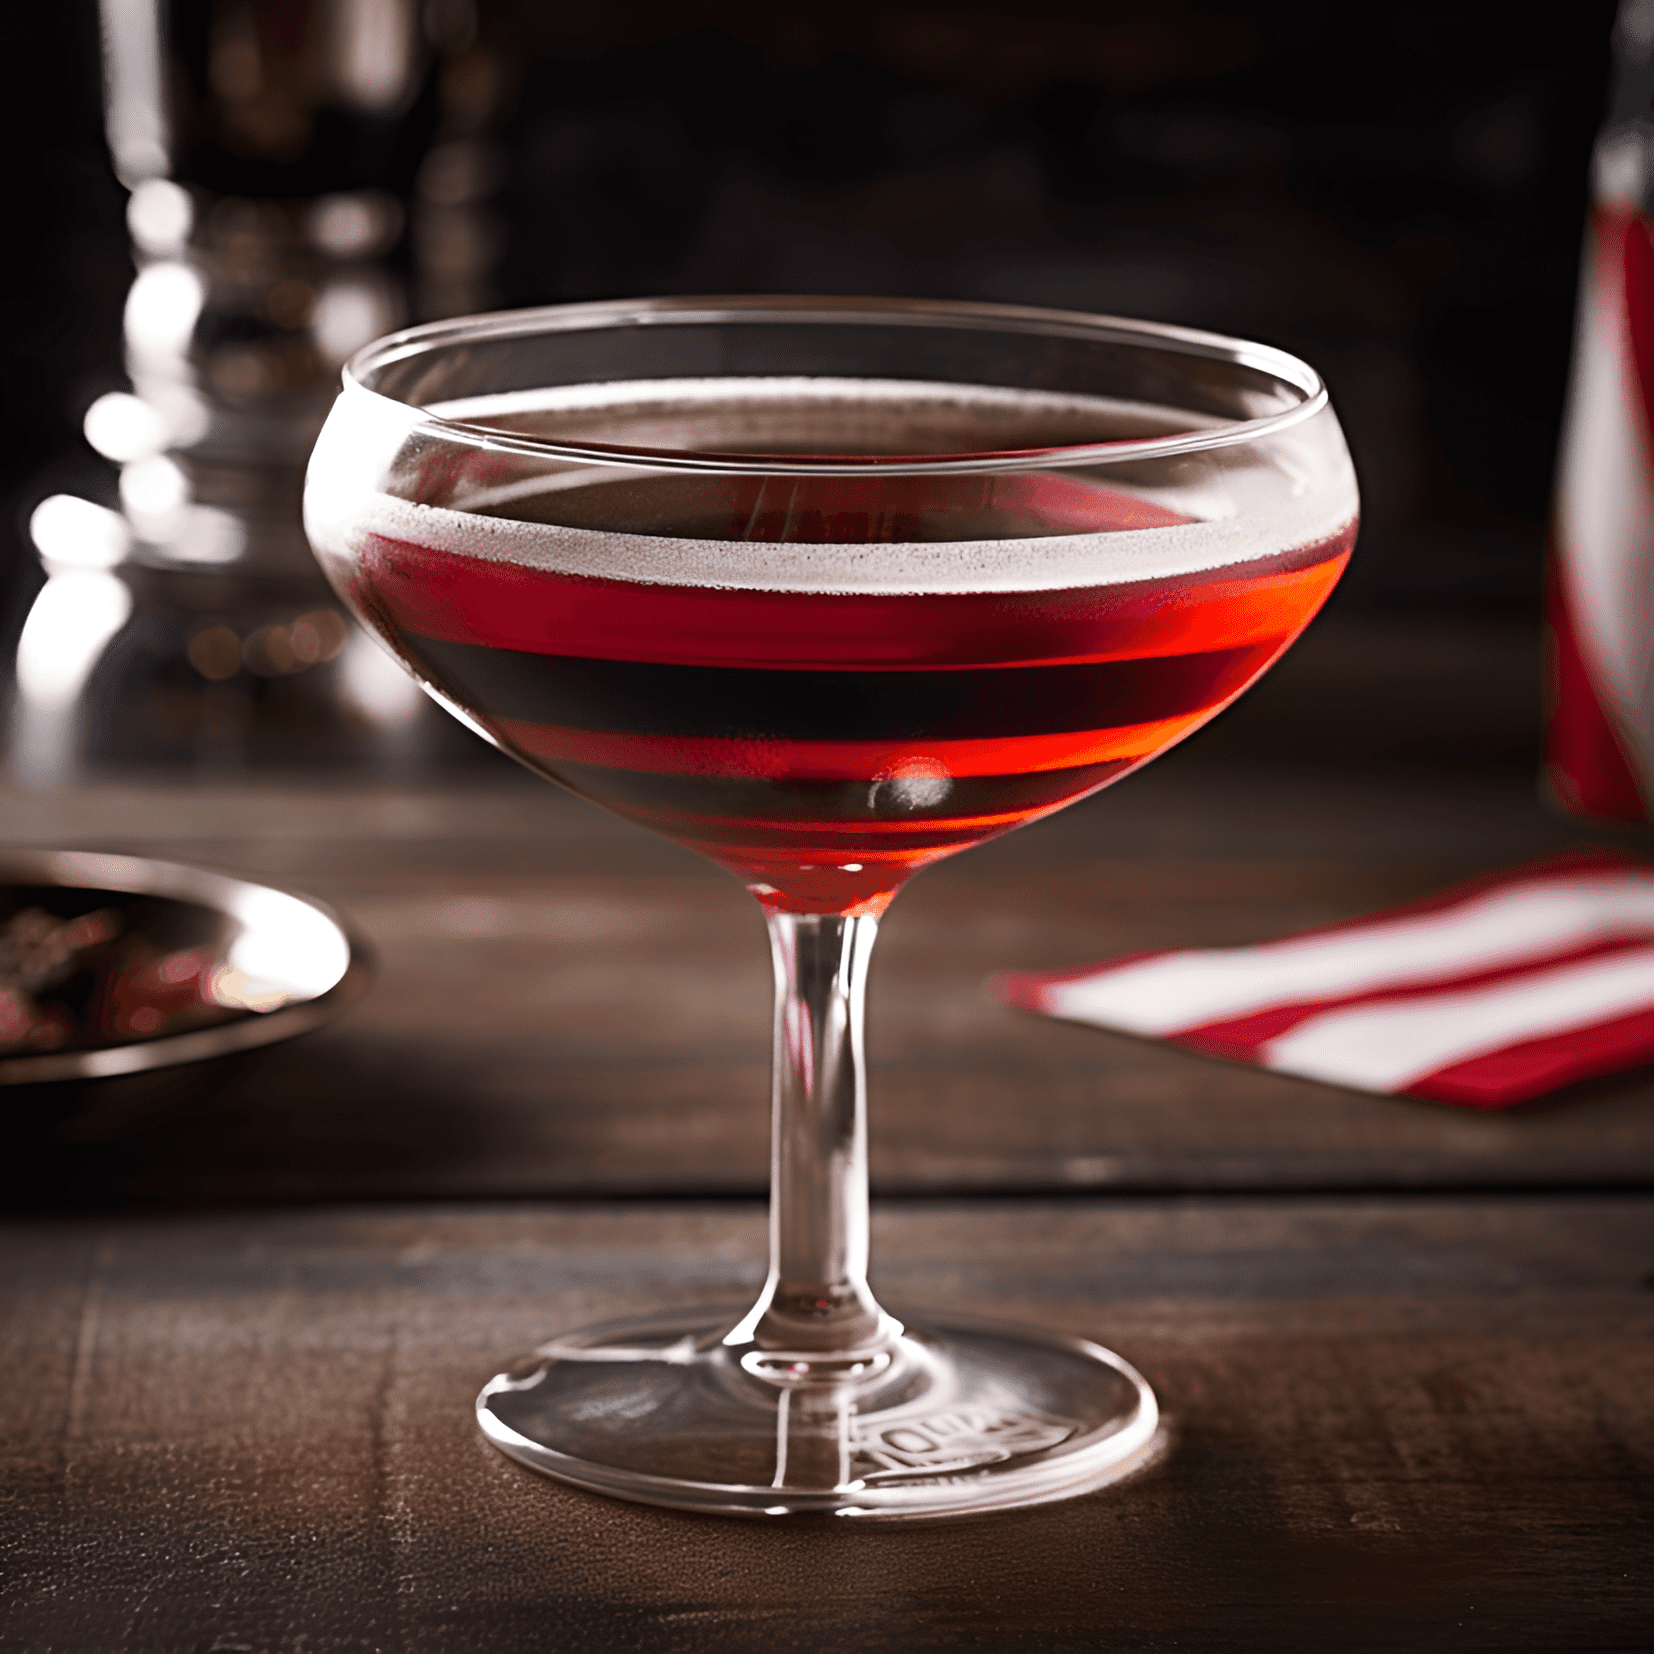 El cóctel Betsy Ross tiene una textura rica y aterciopelada con un toque de dulzura del vino de Oporto. El brandy agrega calidez y profundidad, mientras que el licor de naranja aporta un toque de brillo cítrico. El adorno de nuez moscada realza el sabor general con un sutil toque picante.